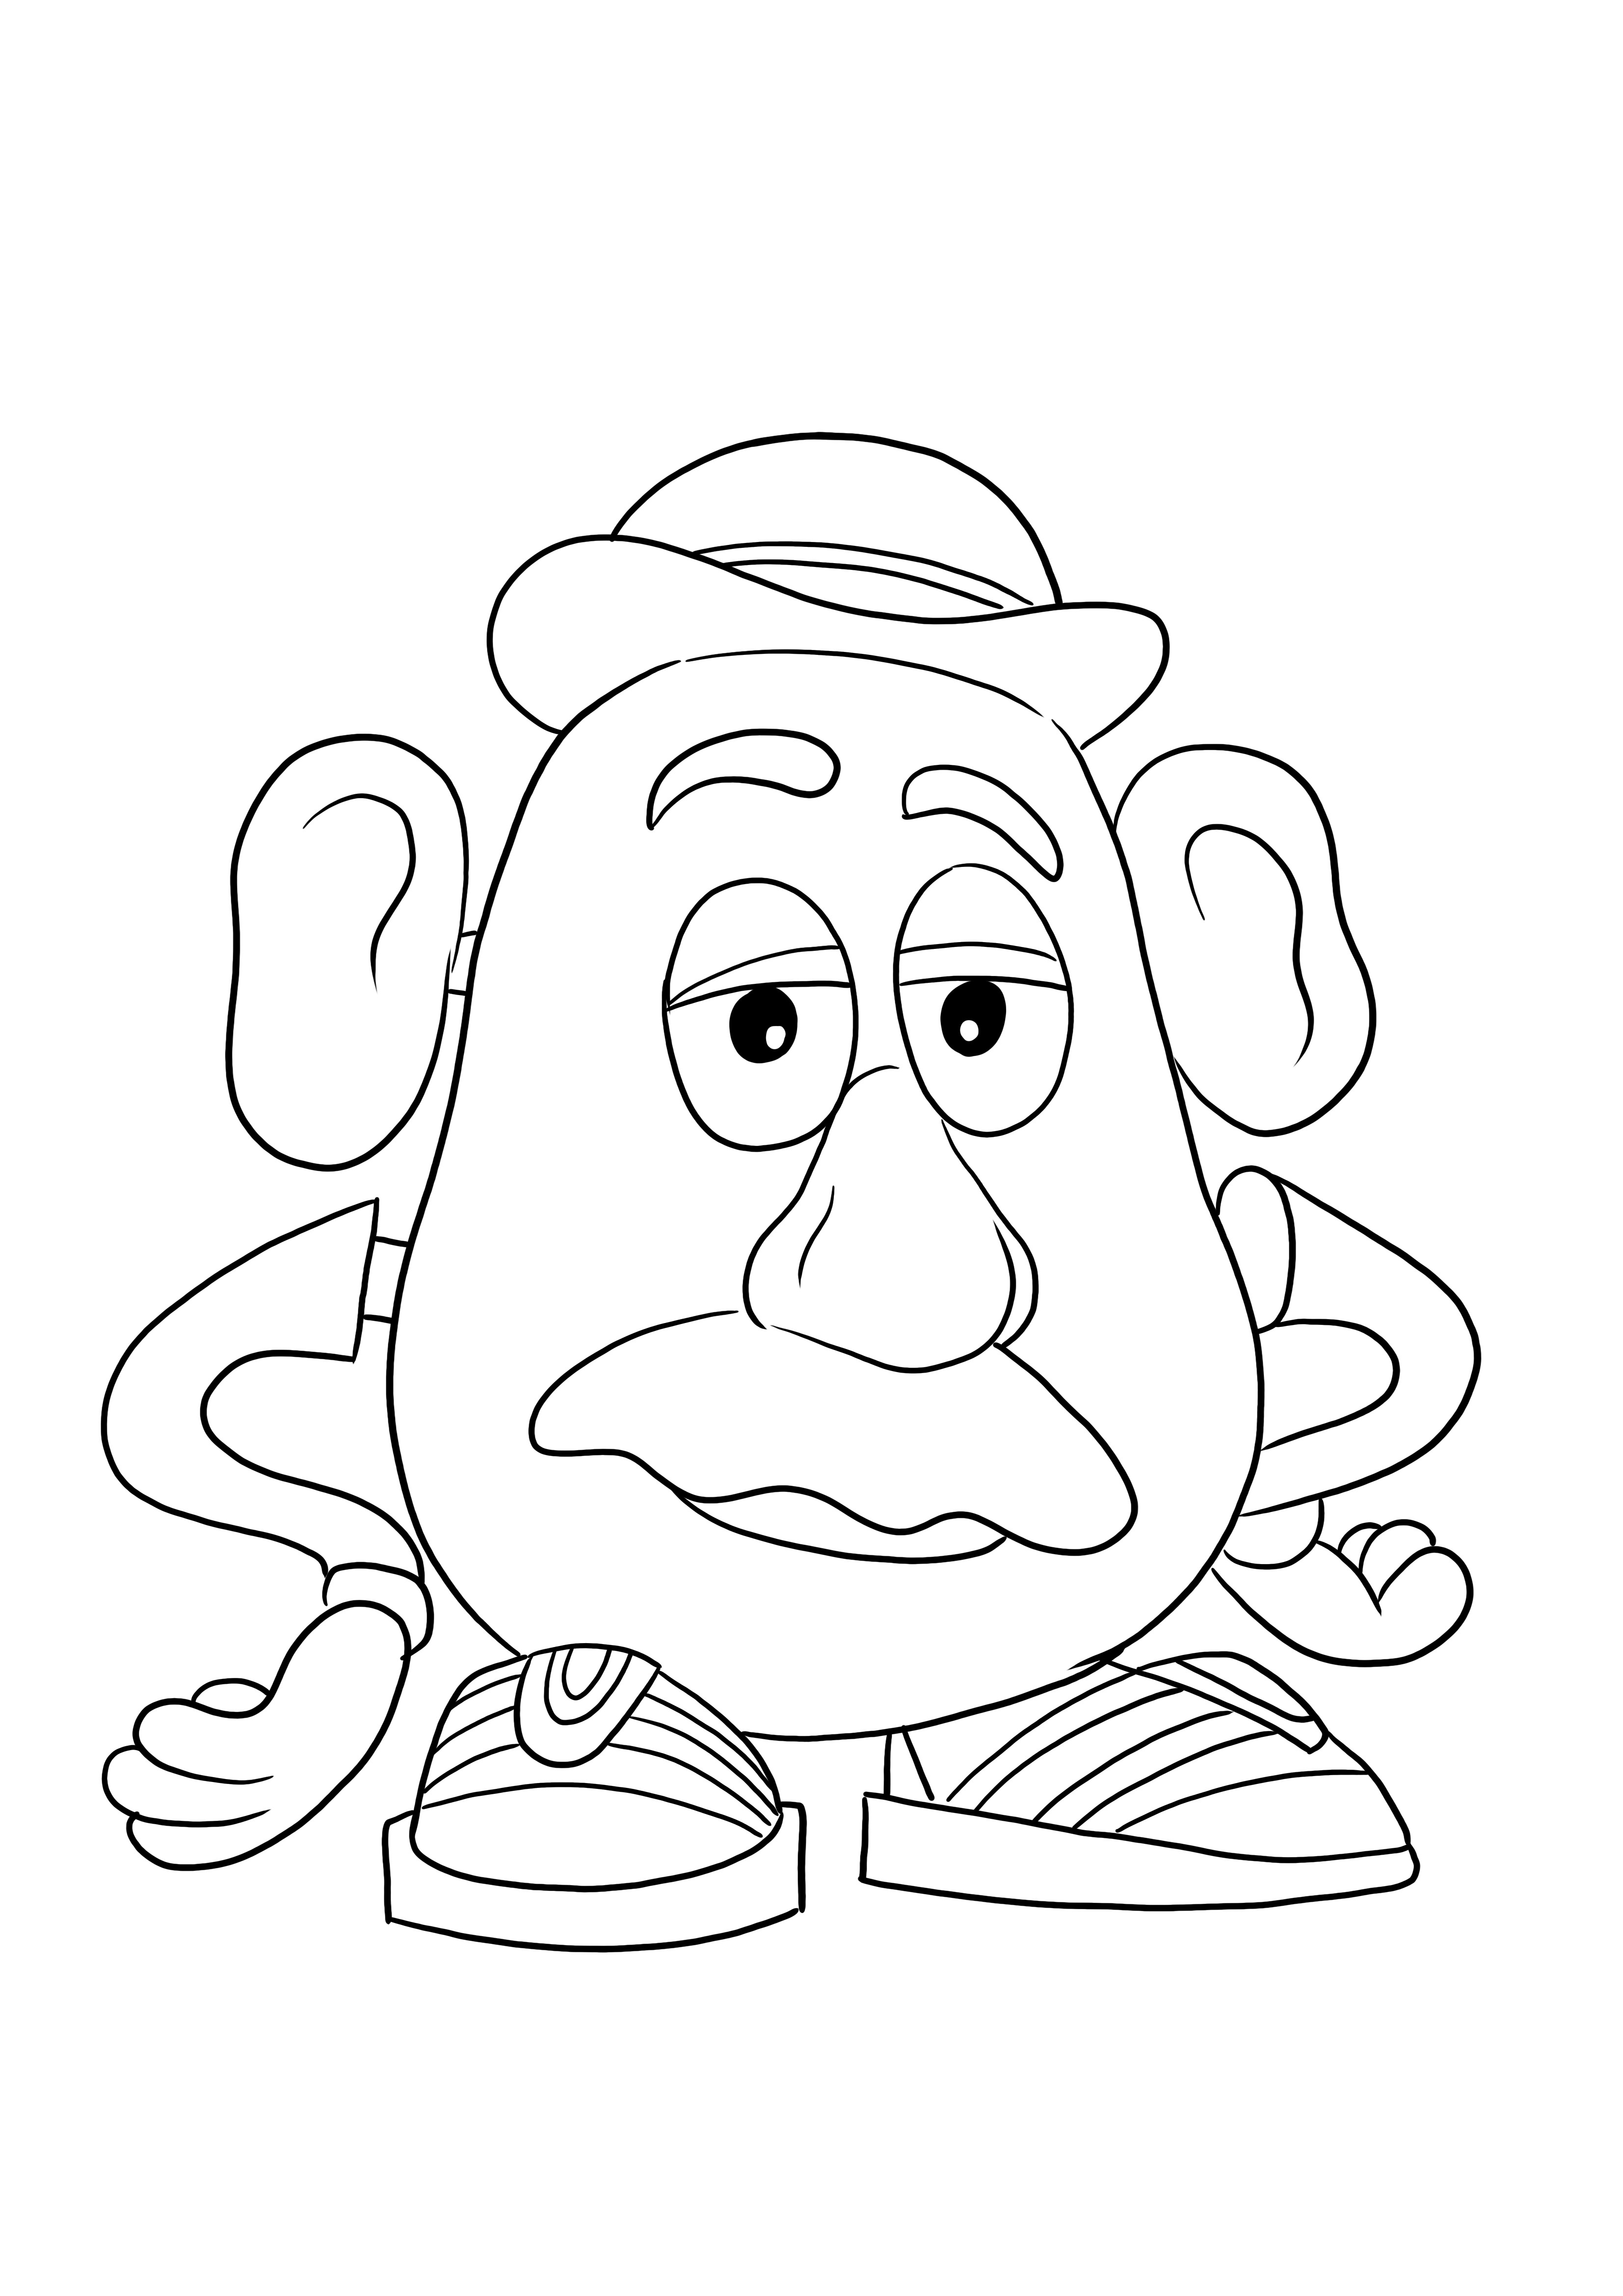 Mister Potato Head ingyenesen letölthető kép gyerekeknek, hogy könnyen kiszínezzenek